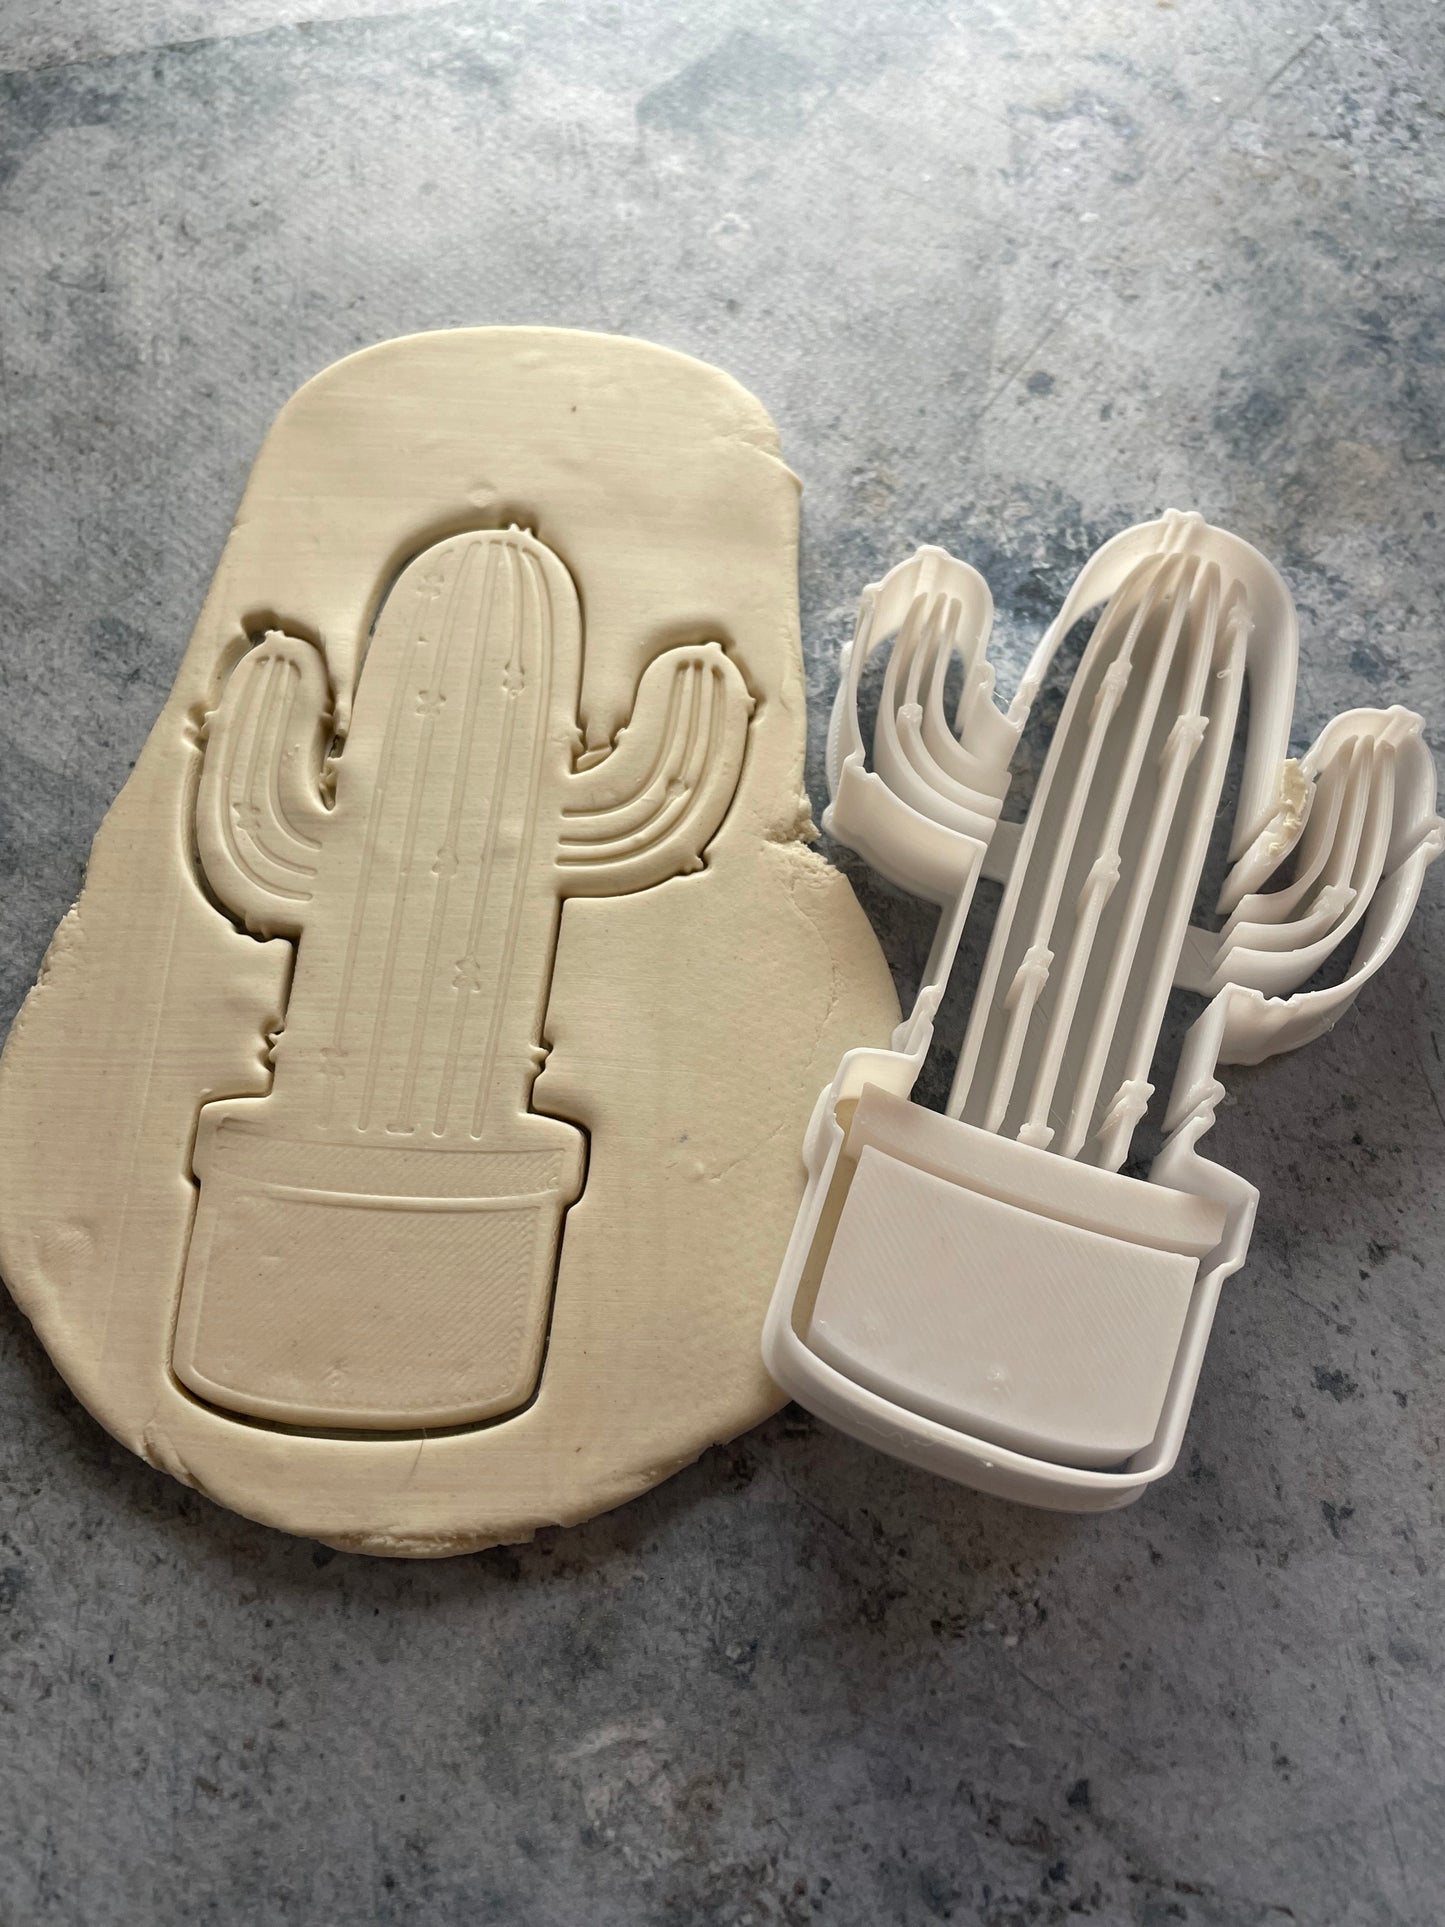 Emporte-pièce - Cactus -  pâte à sucre, pâte à modeler-Décoration gâteau-Fait maison-France 3D